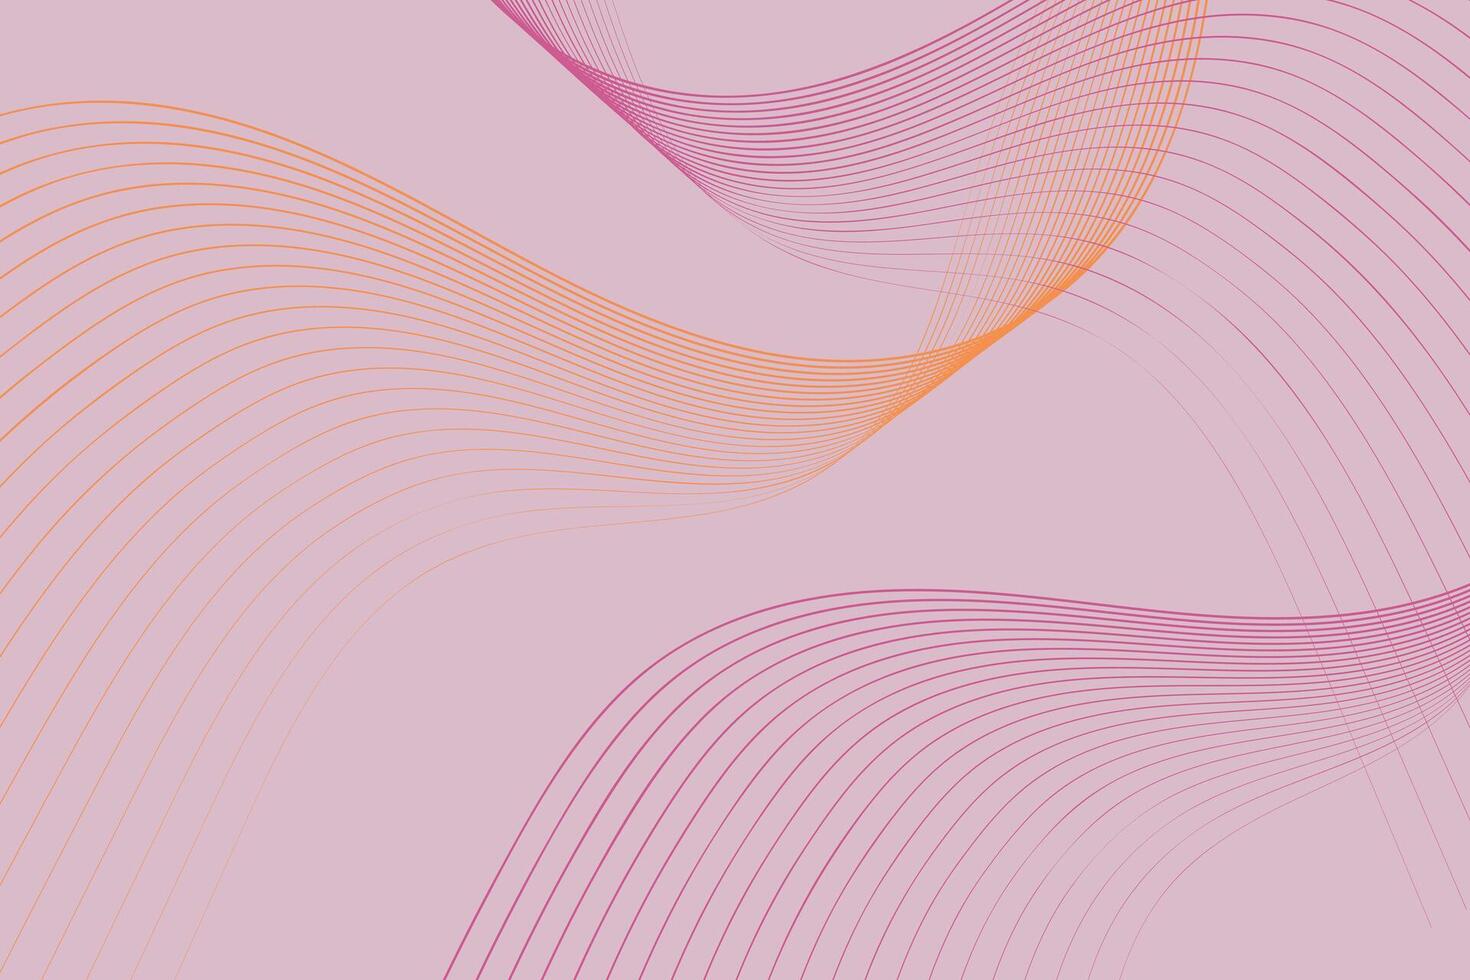 Rosa Hintergrund mit wellig Linien Laufen über es im verschiedene Richtungen. das Linien erstellen ein dynamisch und visuell interessant Muster auf das texturiert Oberfläche vektor